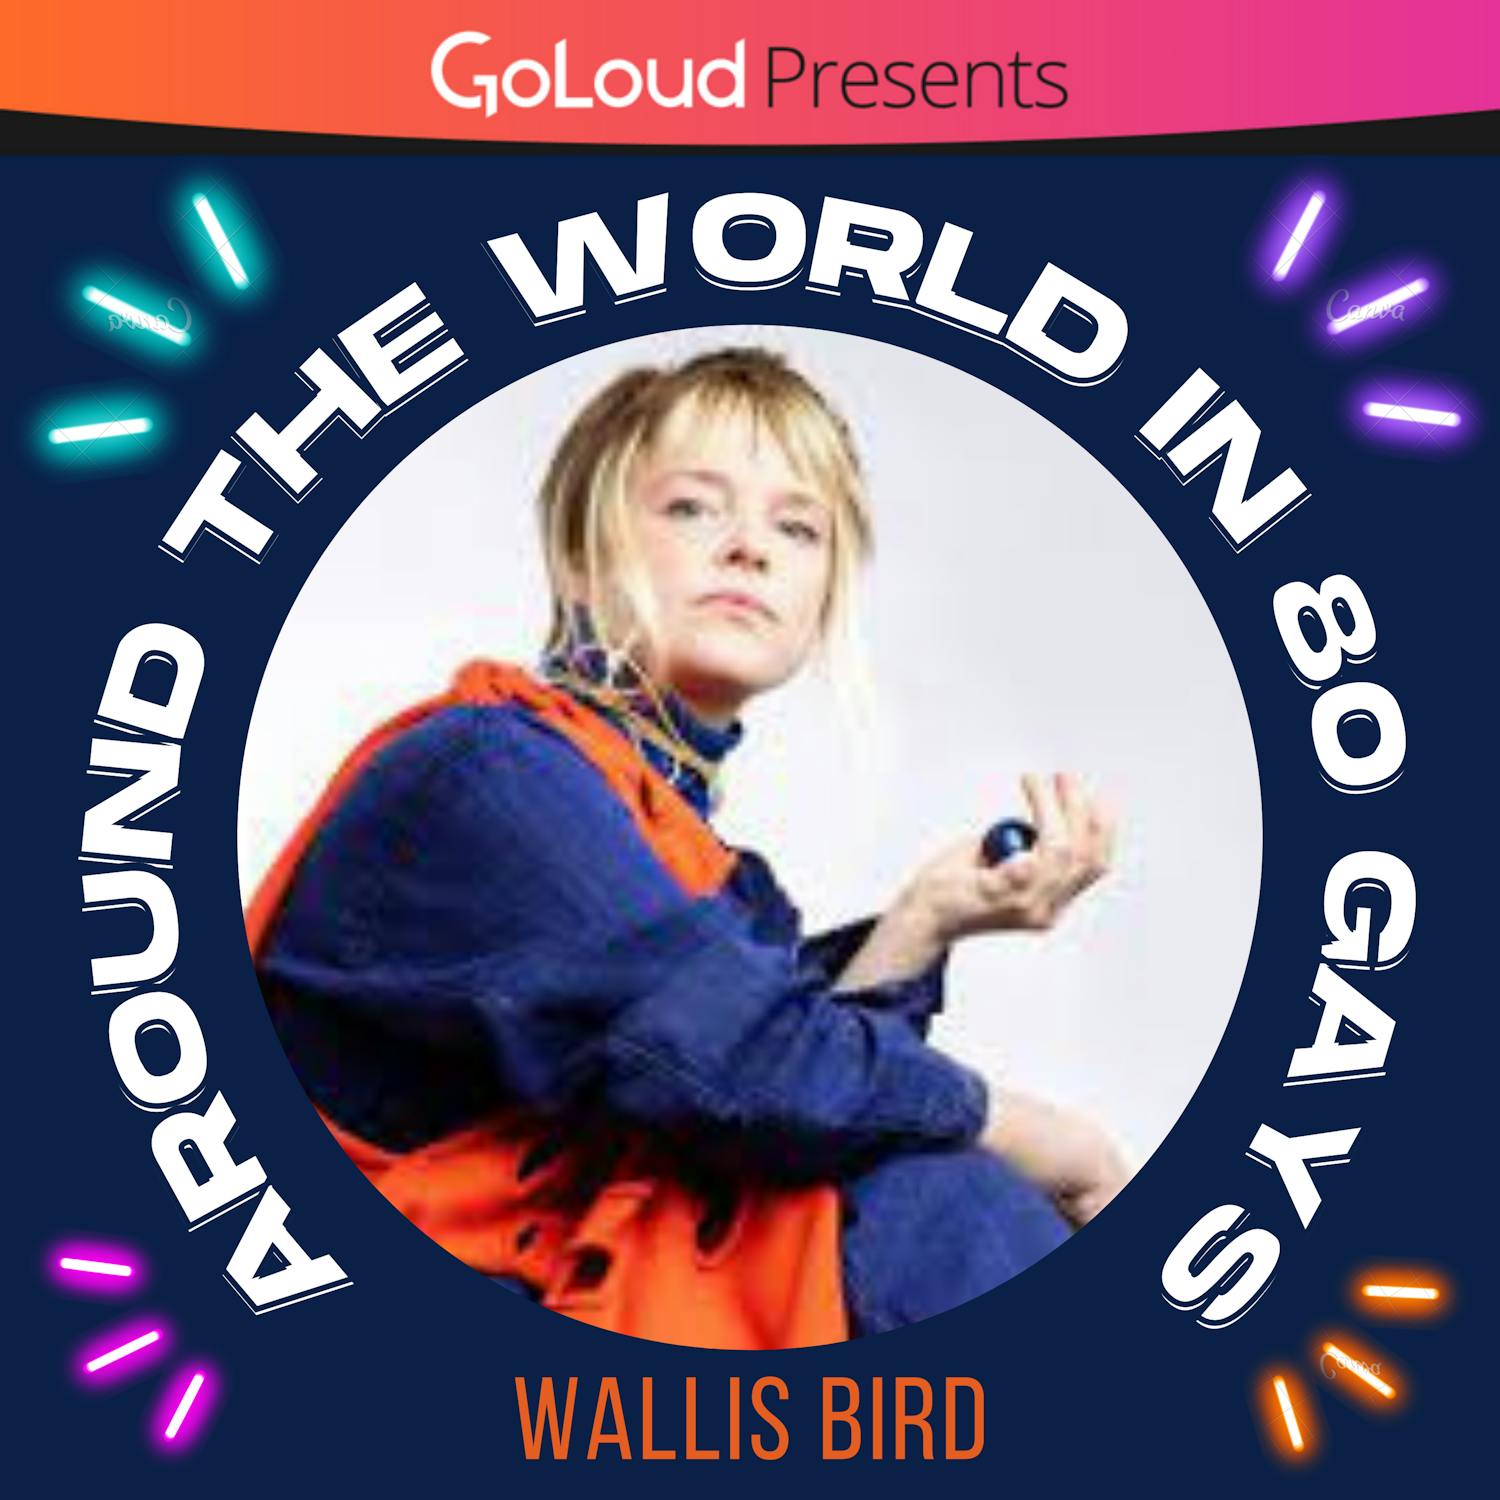 Around the World in 80 Gays meets Wallis Bird